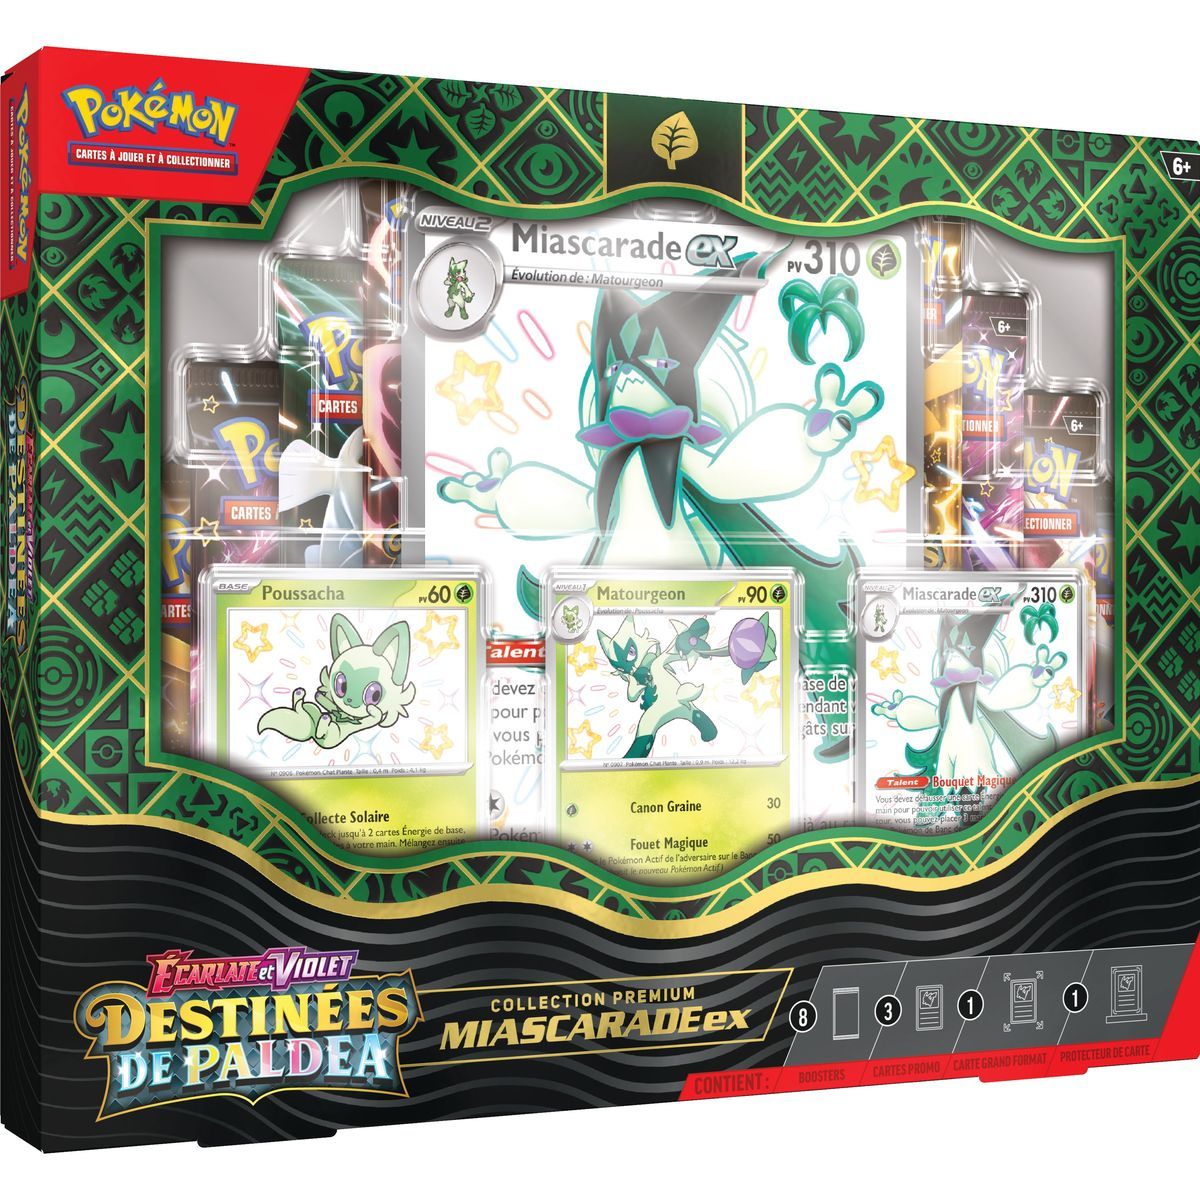 Pokémon - Coffret Collection Écarlate et Violet : Destinées de Paldea Miascarade-EX -[SV04.5 - EV04.5] - FR